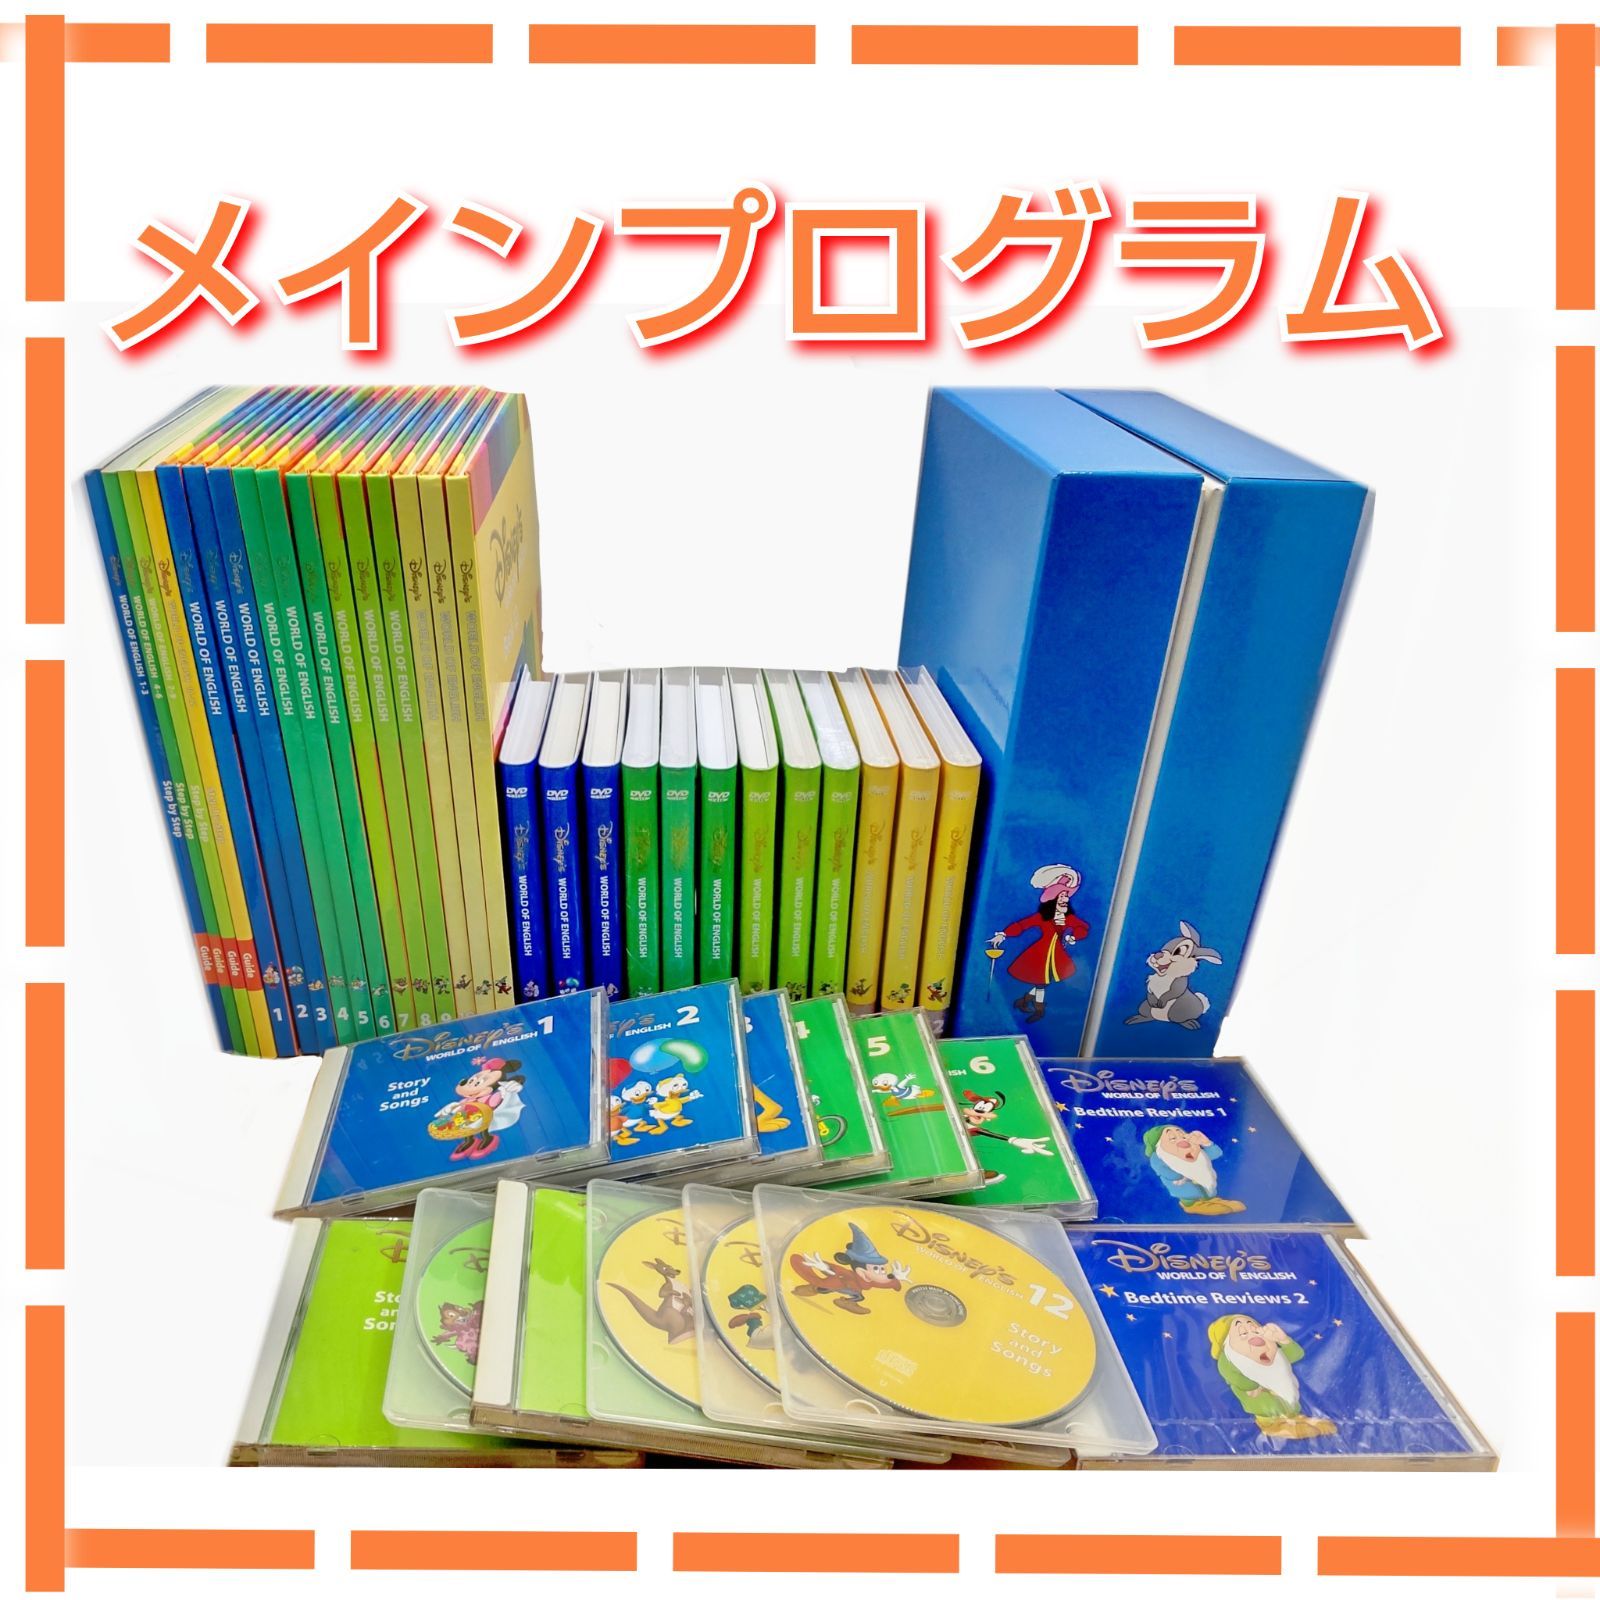 ディズニー英語システム DVD CD メインプログラム ステップバイ